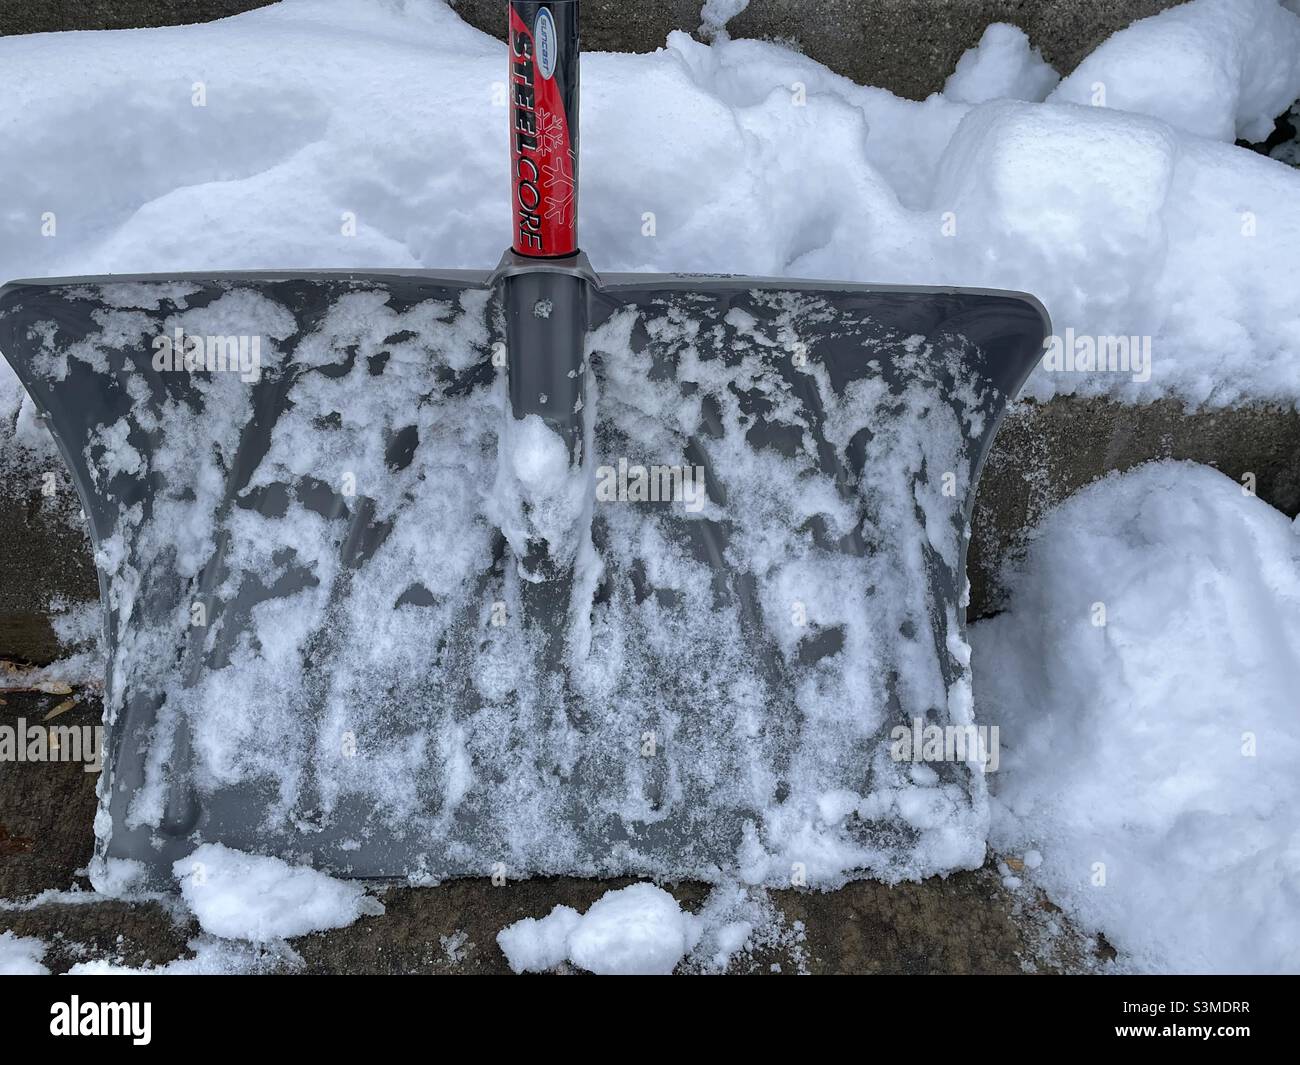 Un pied de neige a nécessité l'utilisation de cette pelle à neige robuste dans l'Utah, aux États-Unis.La pelle enneigée est soutenue contre des marches de porche couvertes de neige pour rendre cette saison encore vie. Banque D'Images